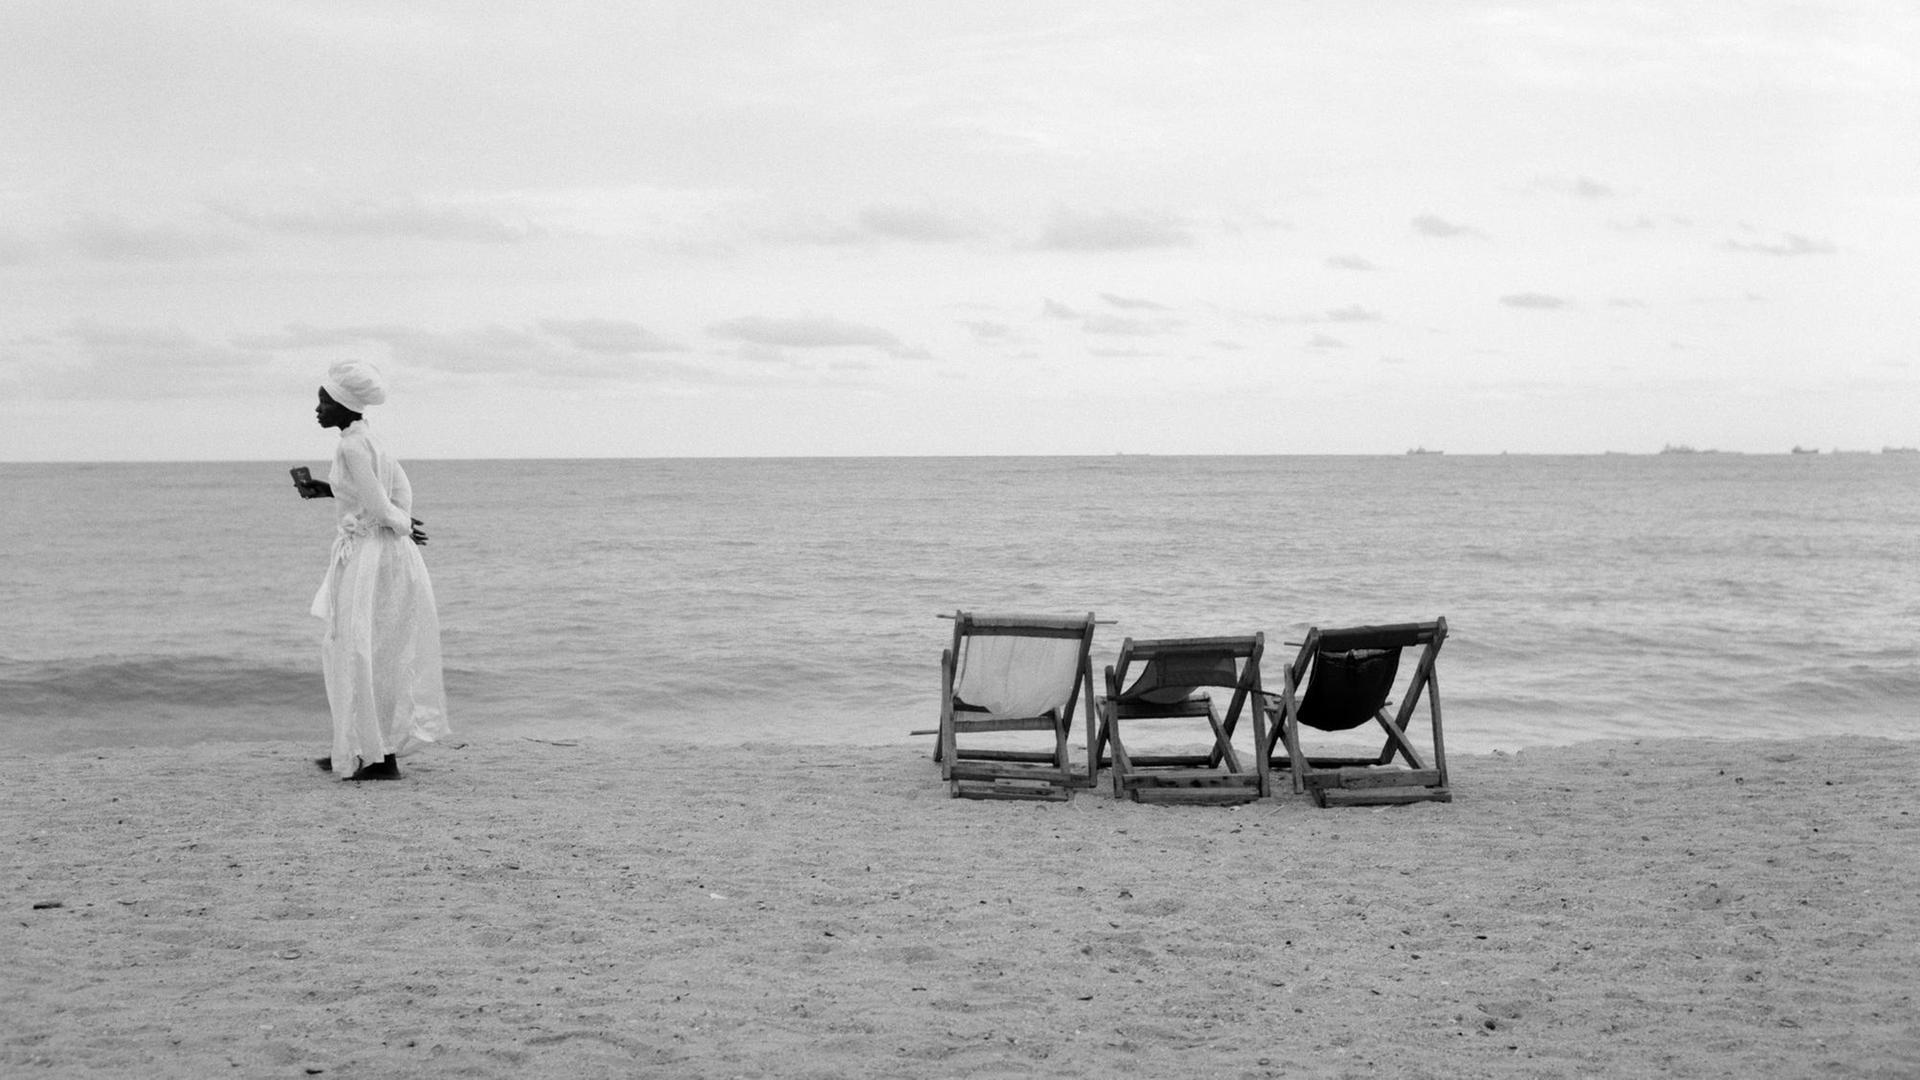 Eine Frau in weißem Kleid steht an einem Strand, neben ihr sind drei Standliegen.